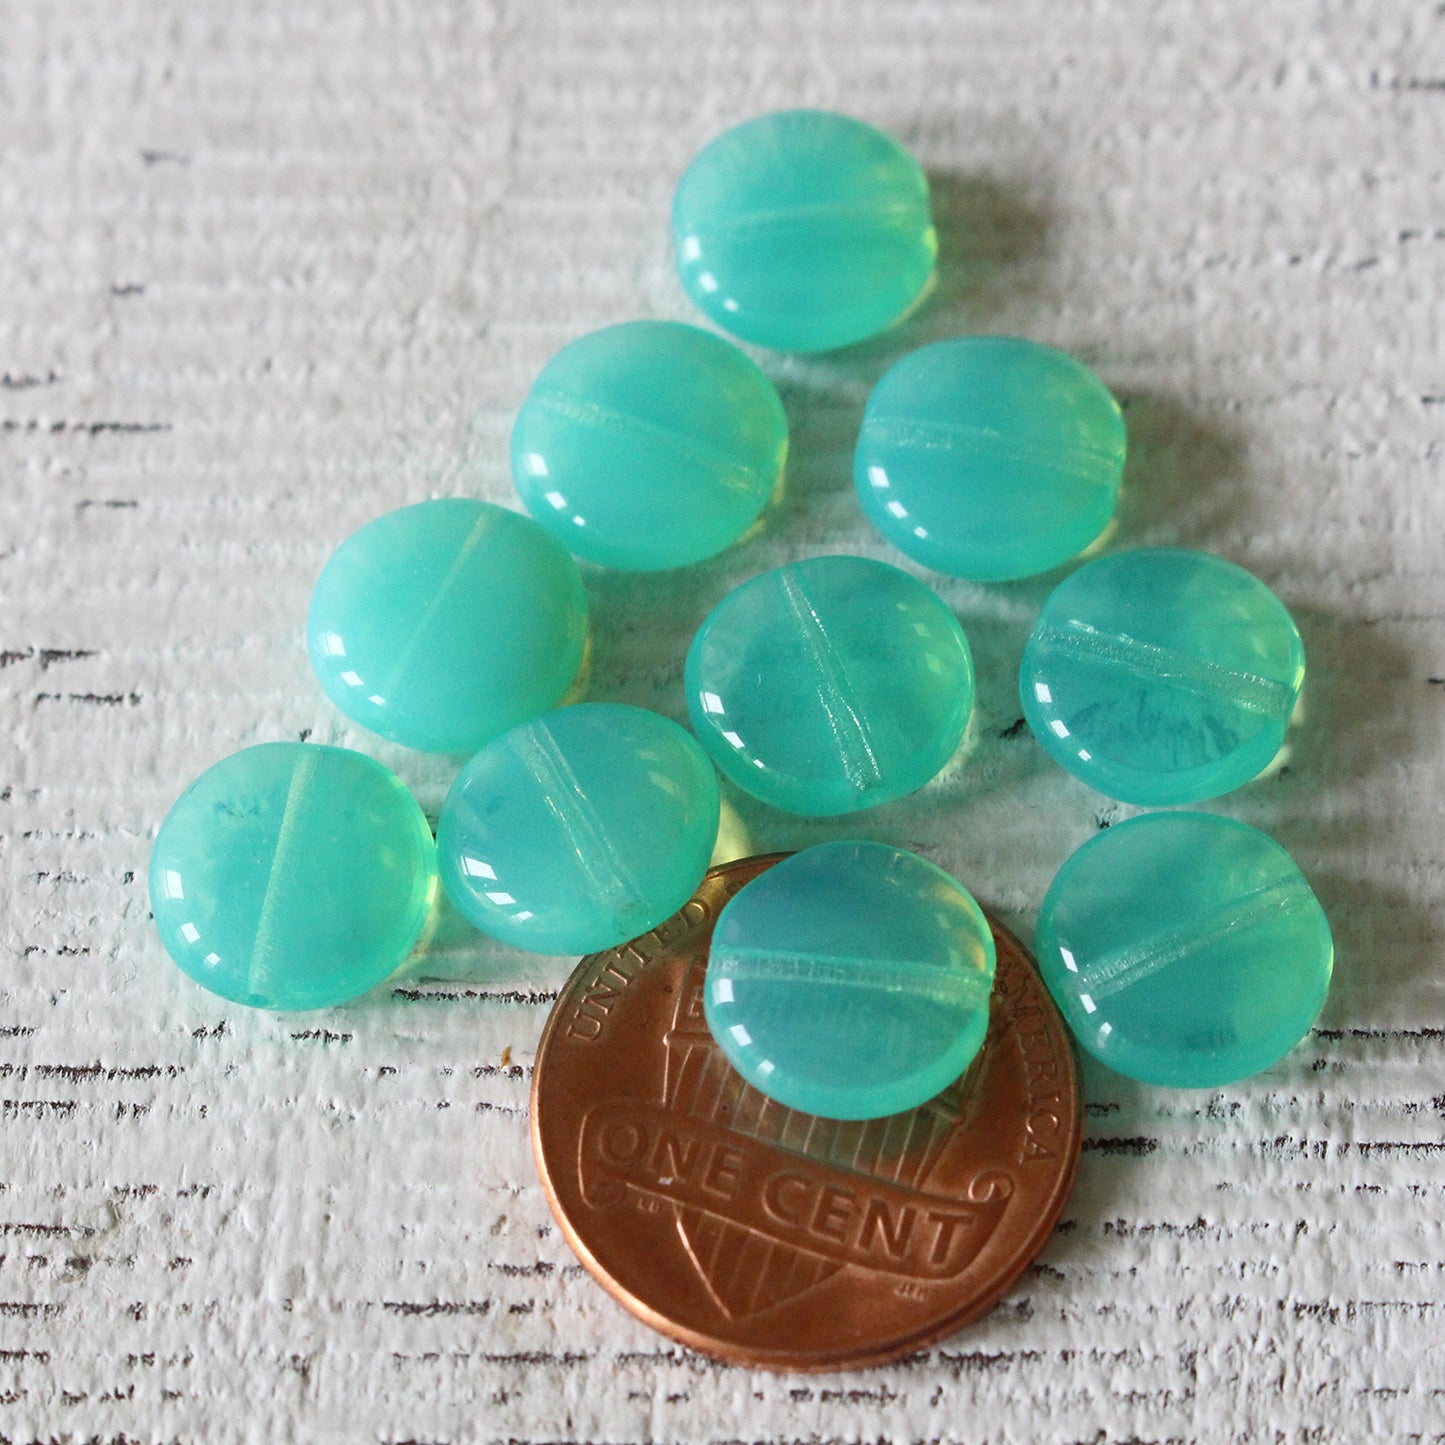 10mm Glass Coin Beads - Seafoam Opaline - 15 Beads